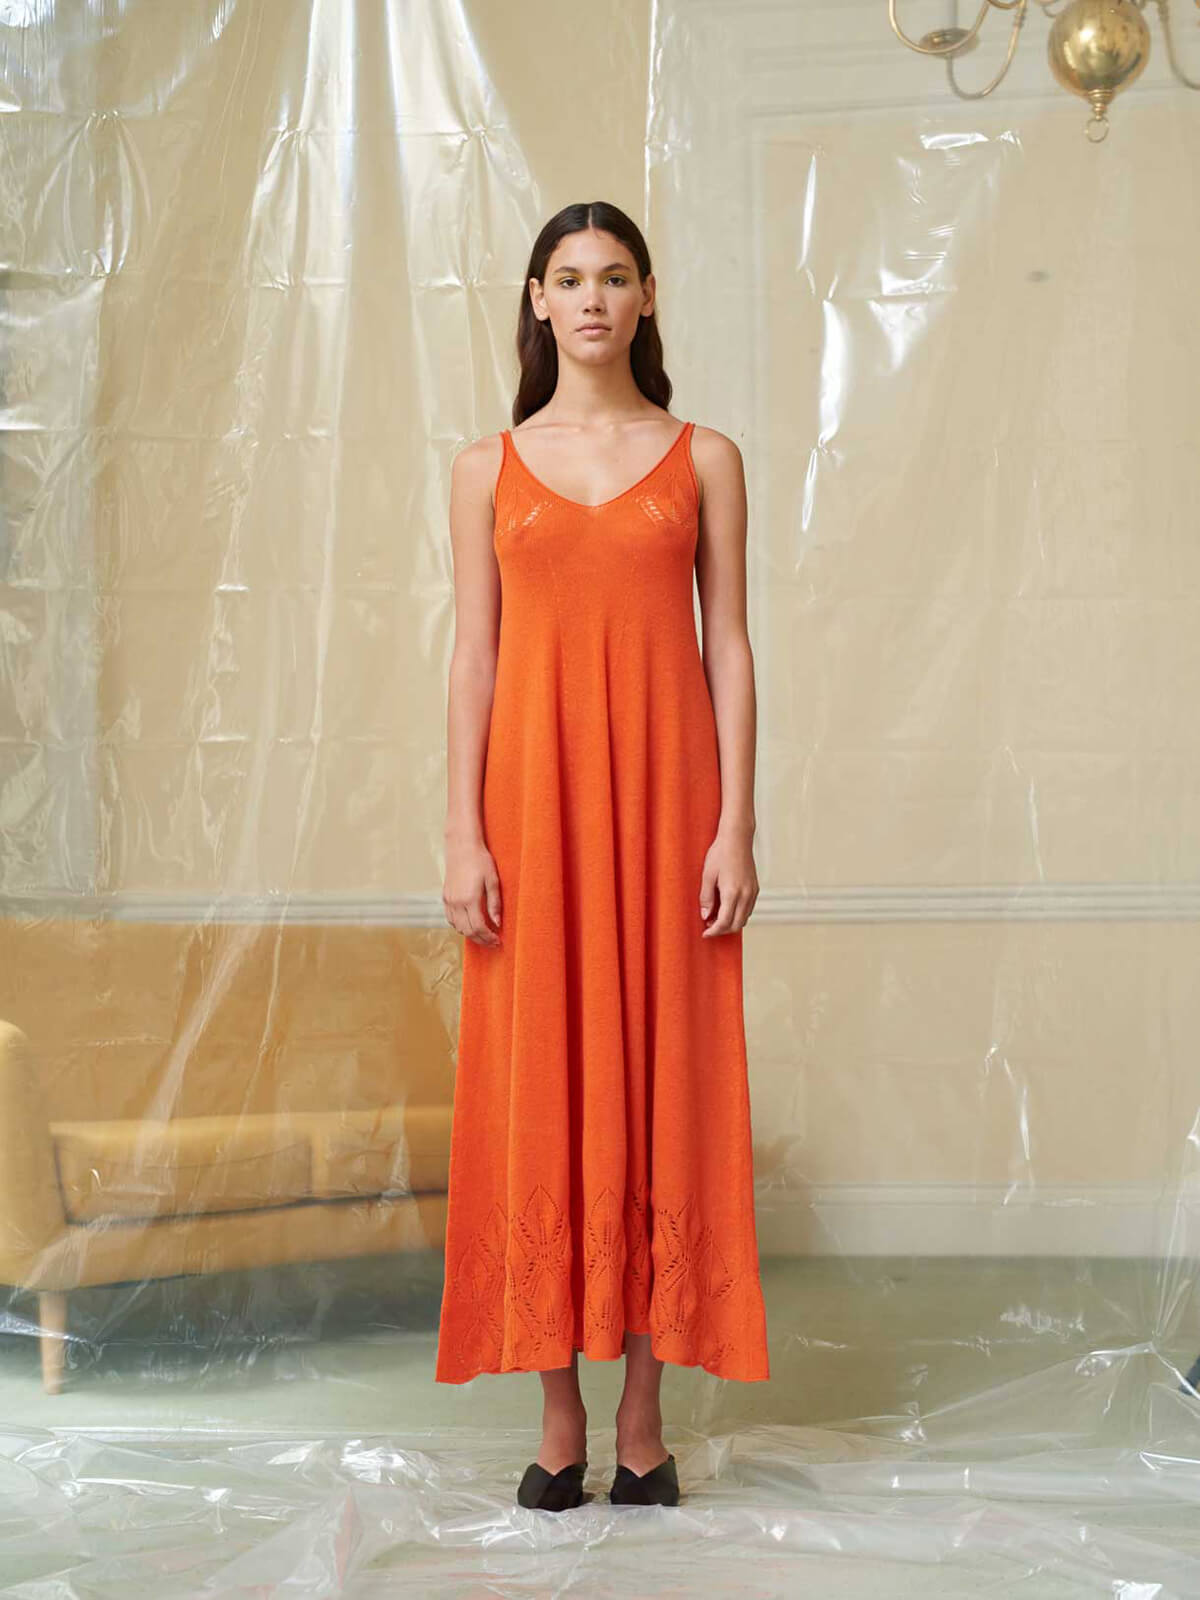 Model poses wearing an orange slip dress